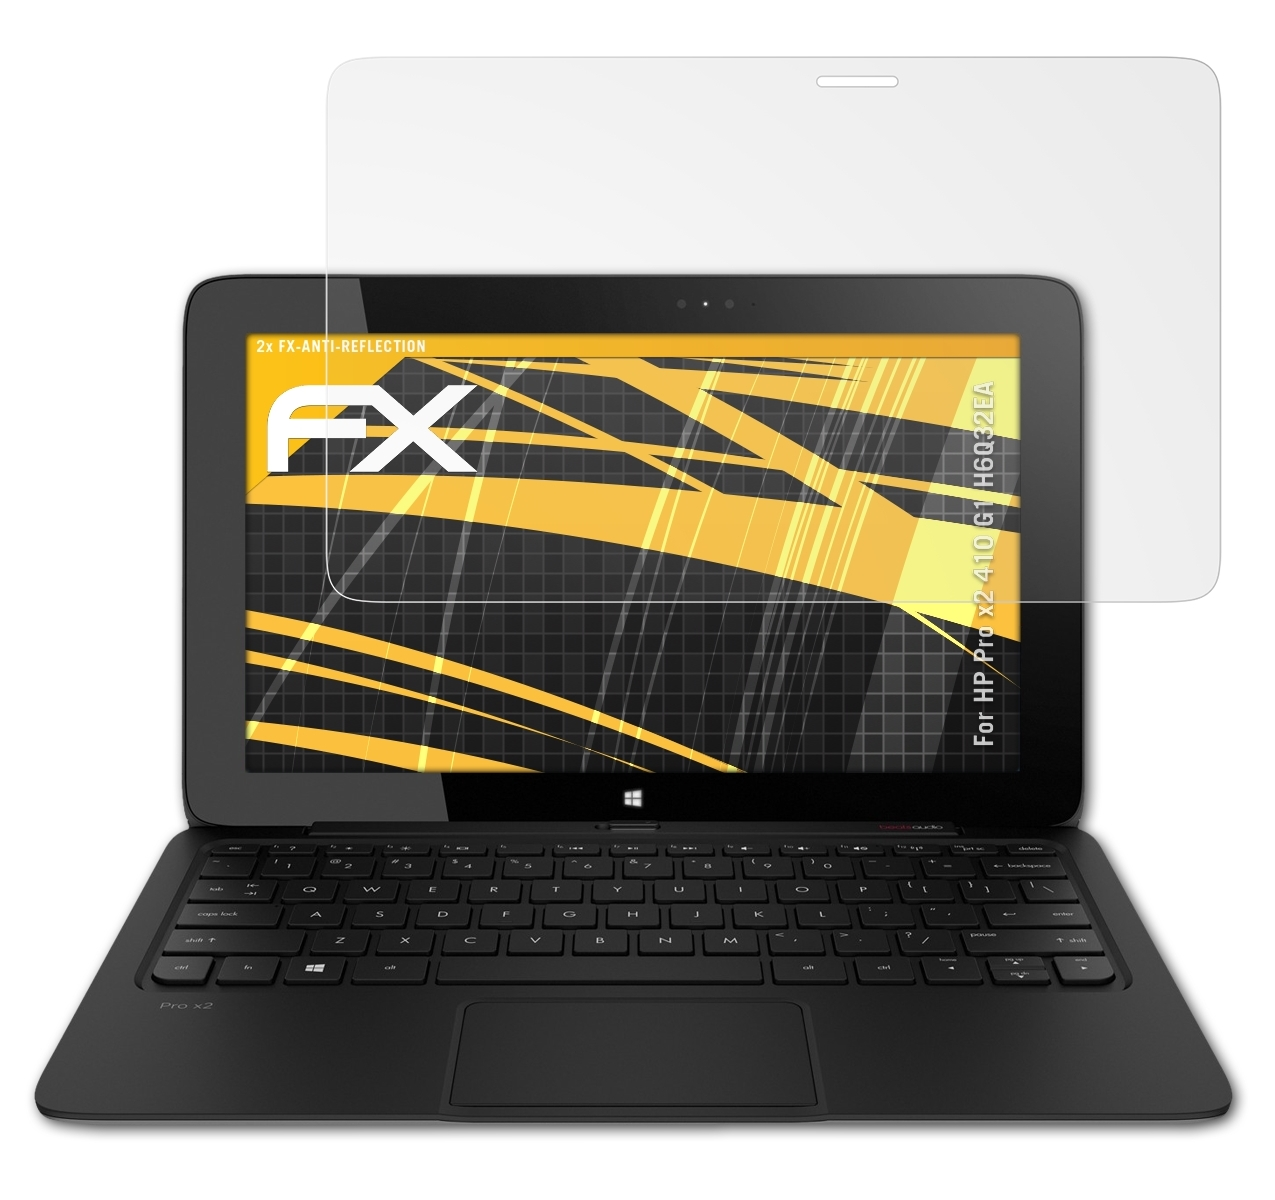 ATFOLIX 2x FX-Antireflex Displayschutz(für HP 410 G1 Pro (H6Q32EA)) x2